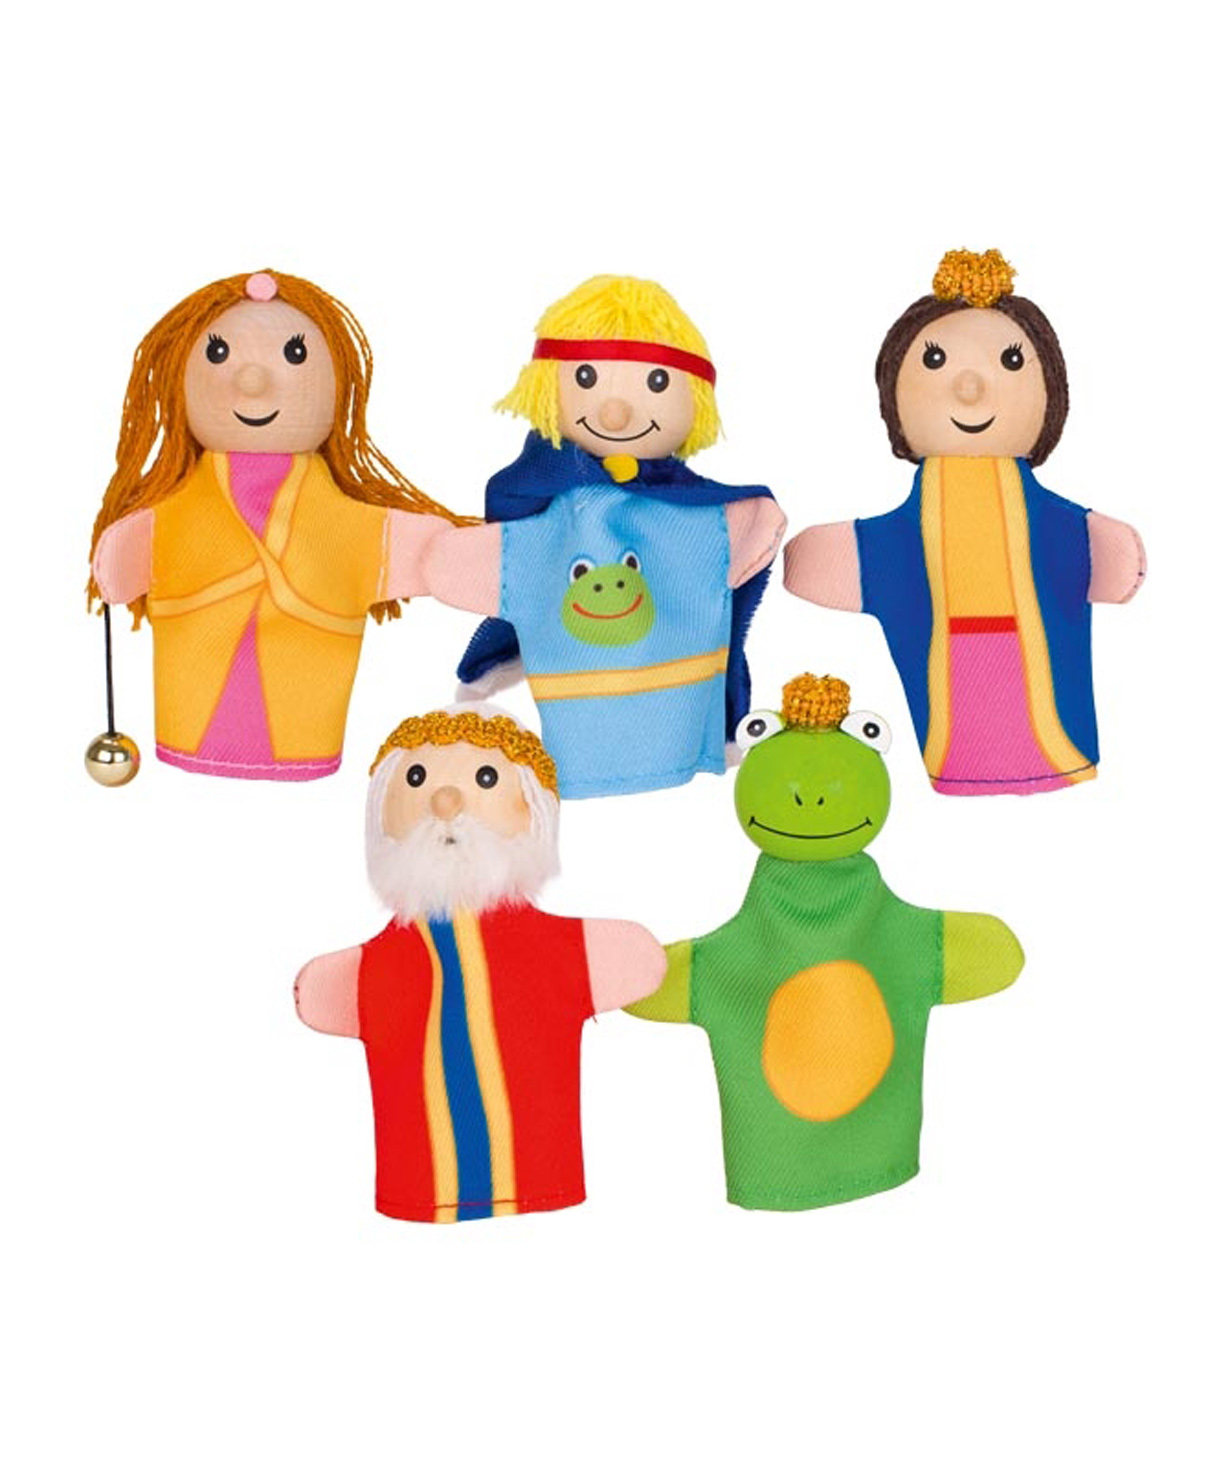 Խաղալիք «Goki Toys» մատի տիկնիկներ Գորտ արքան